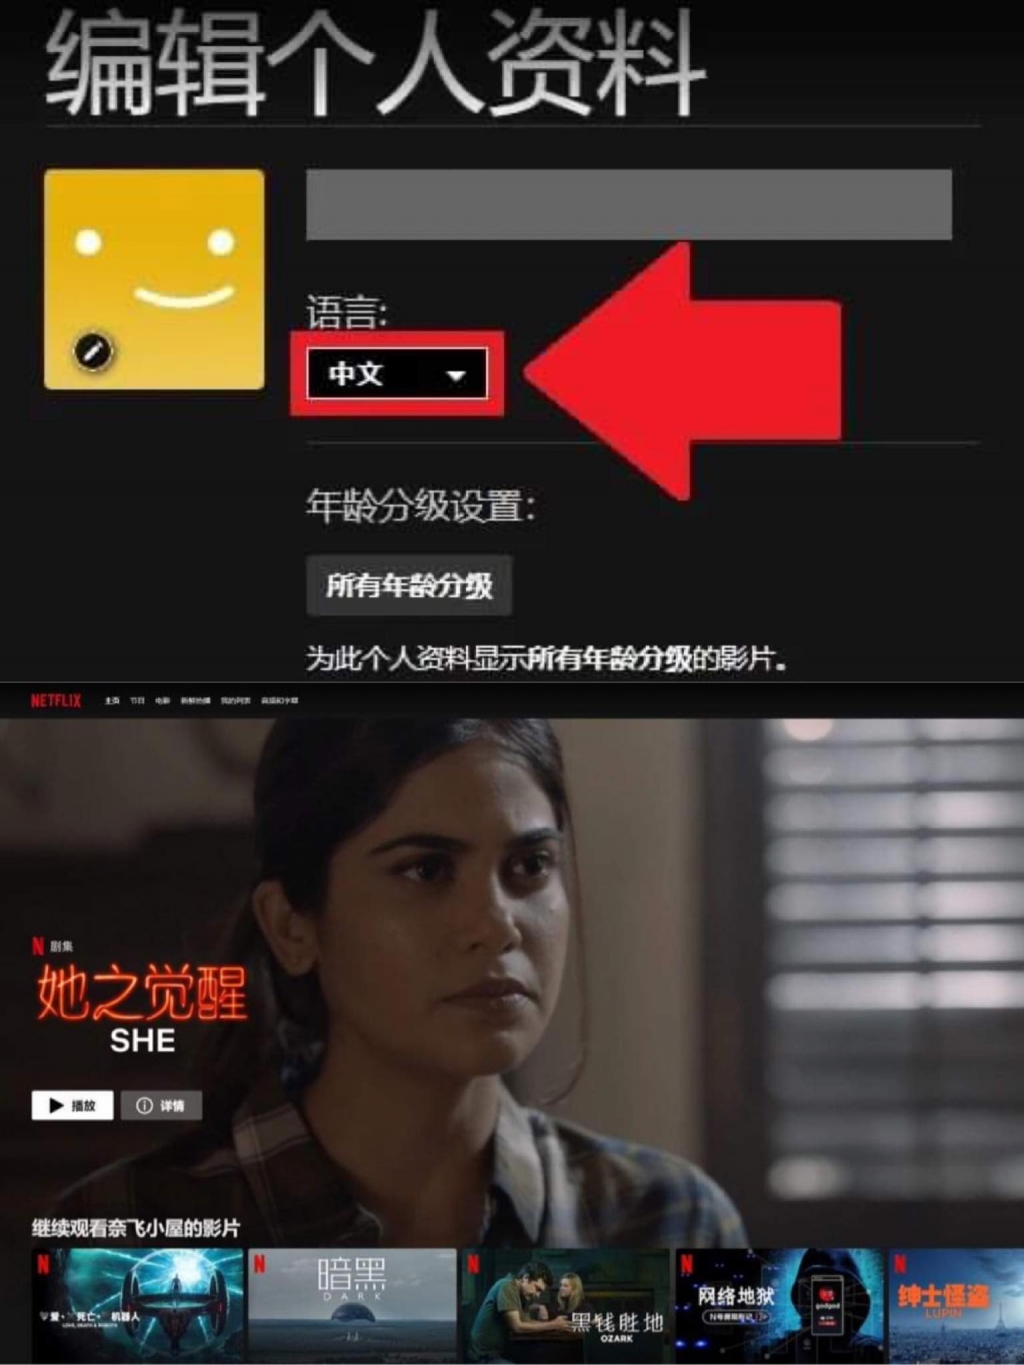 5. Netflix tăng cường hỗ trợ ngôn ngữ tiếng Trung, được xem là bước khởi đầu “lót đường” để tiến vào Trung Quốc